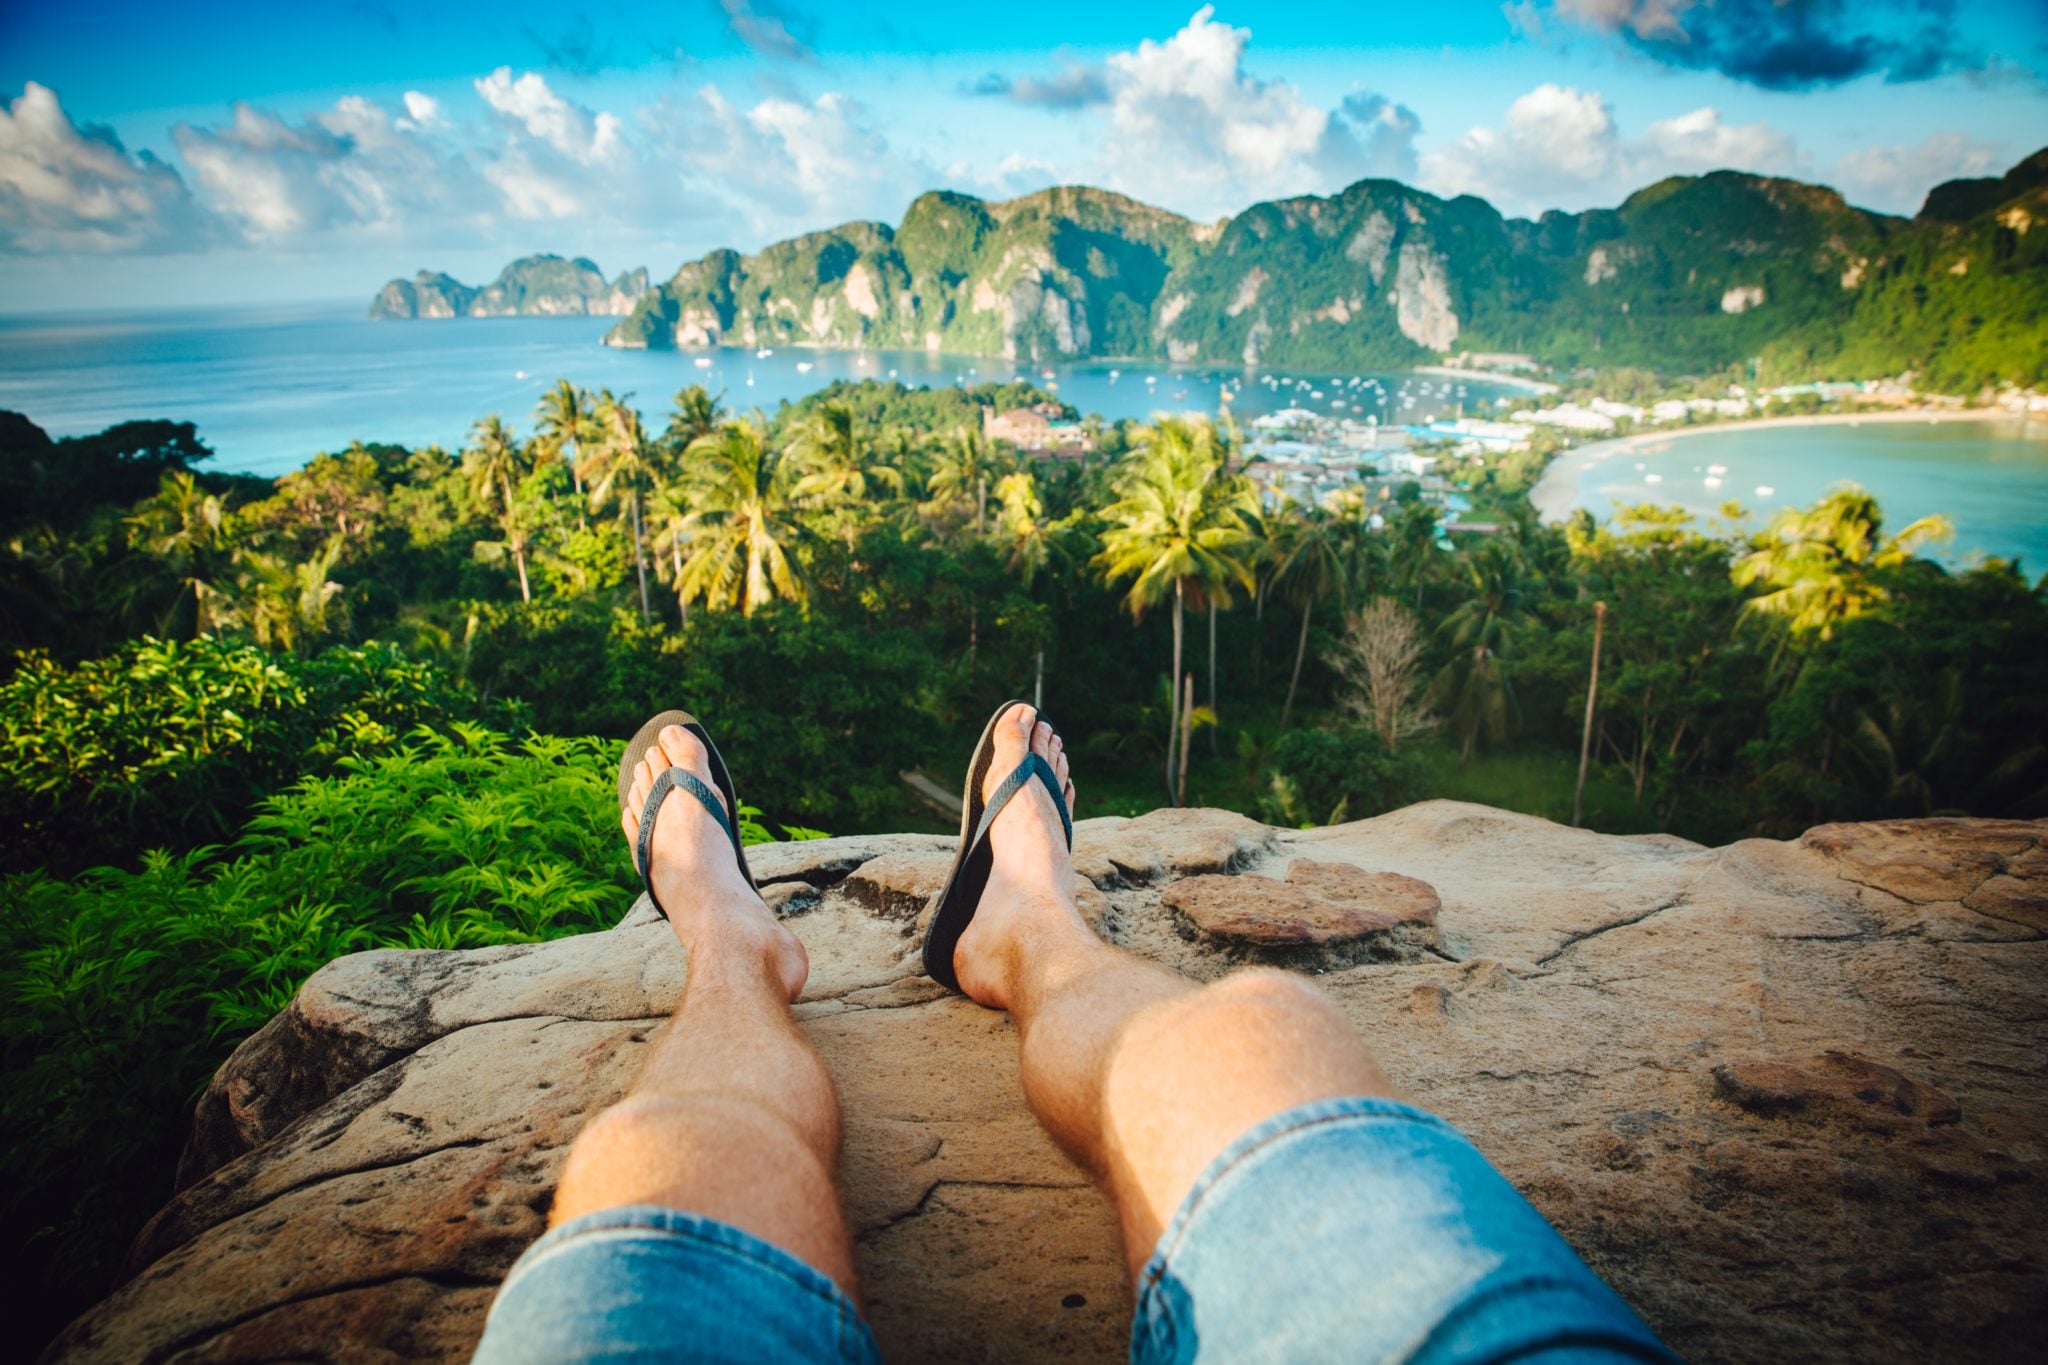 Mężczyzna siedzący na skale na punkcie widokowym w Tajlandii w słoneczny dzień, z widokiem na morze, łodzie, klify, wyspy i palmy